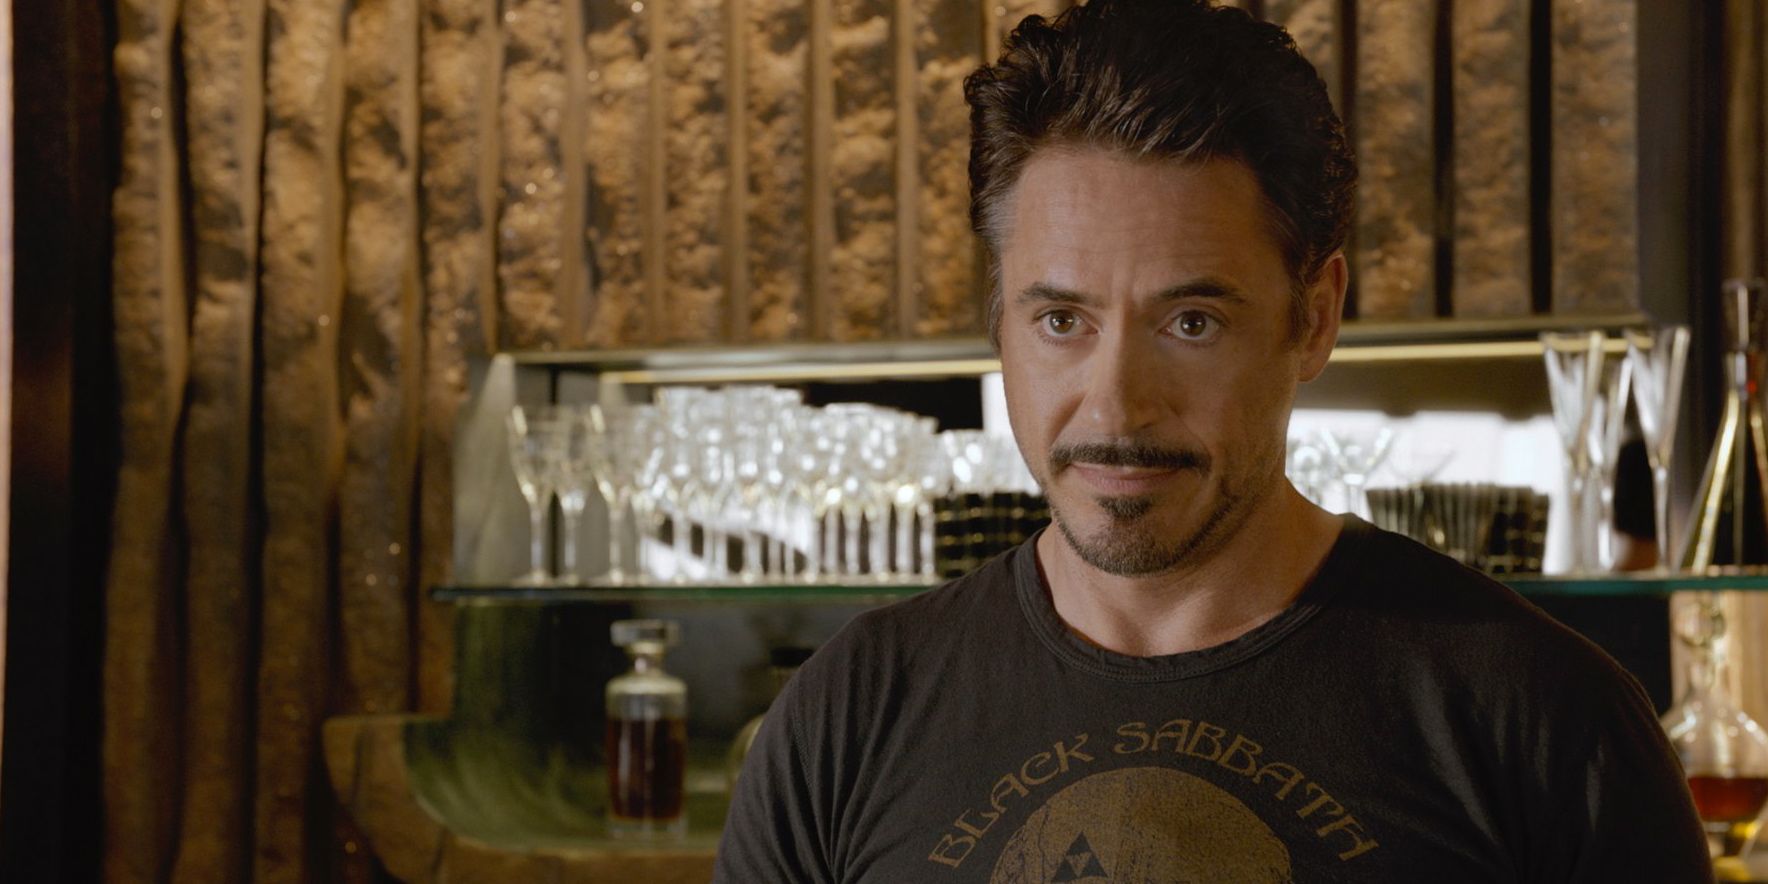 Robert Downey Jr. as Tony Stark in The Avengers